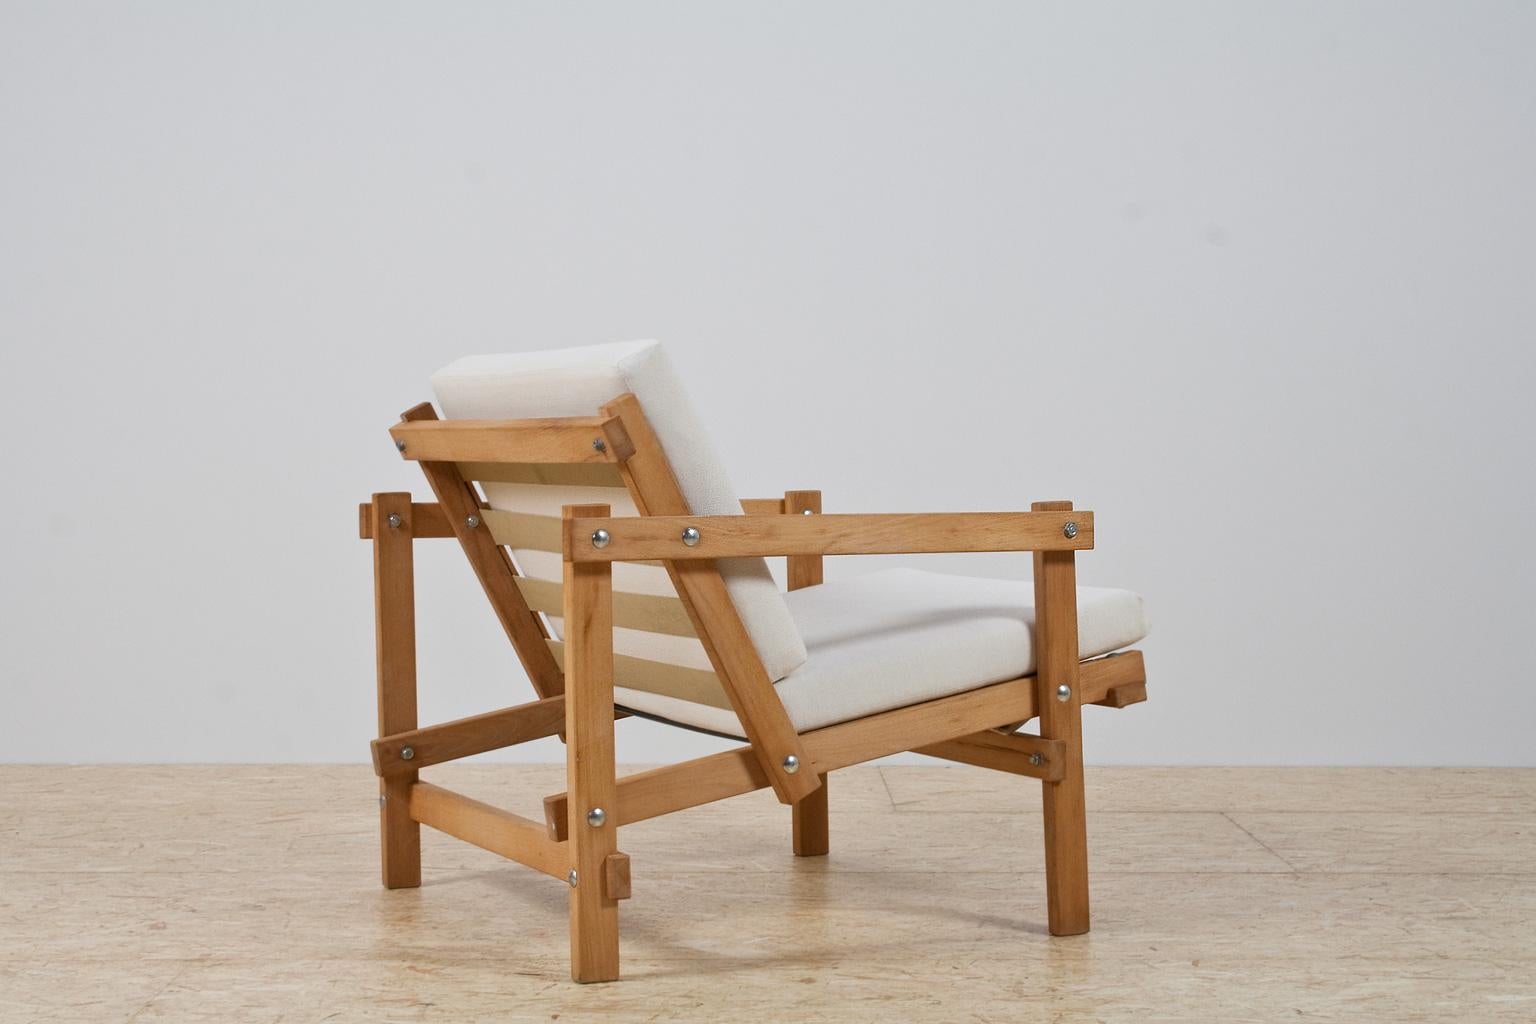 Dutch Minimalist Modern Chair in beech by Martin Visser Model Cleon, 1974-1986